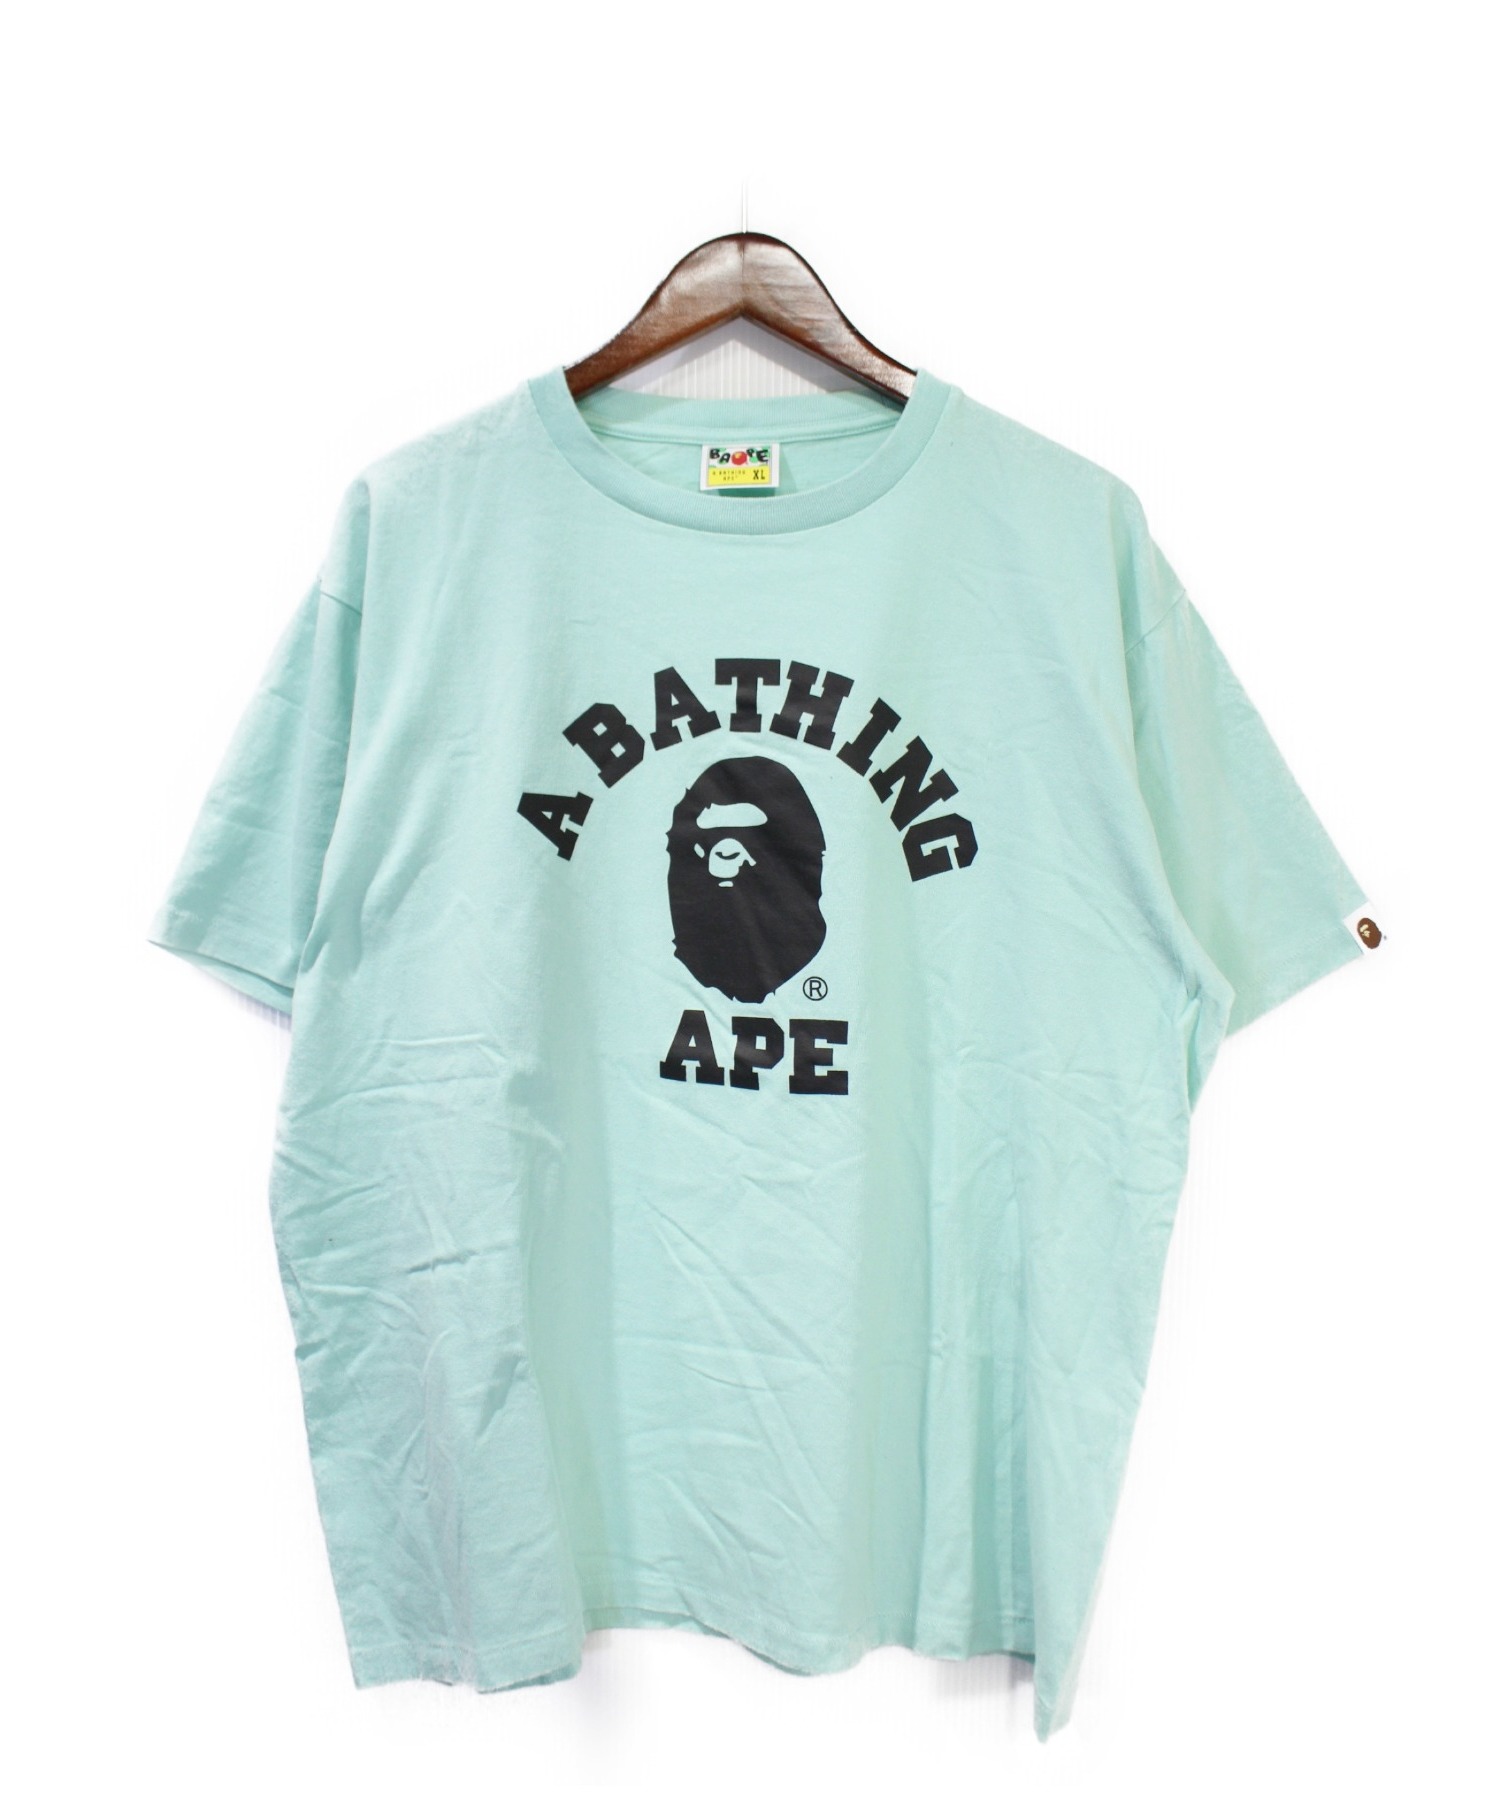 A BATHING APE (アベイシングエイプ) プリントTシャツ ターコイズ サイズ:XL